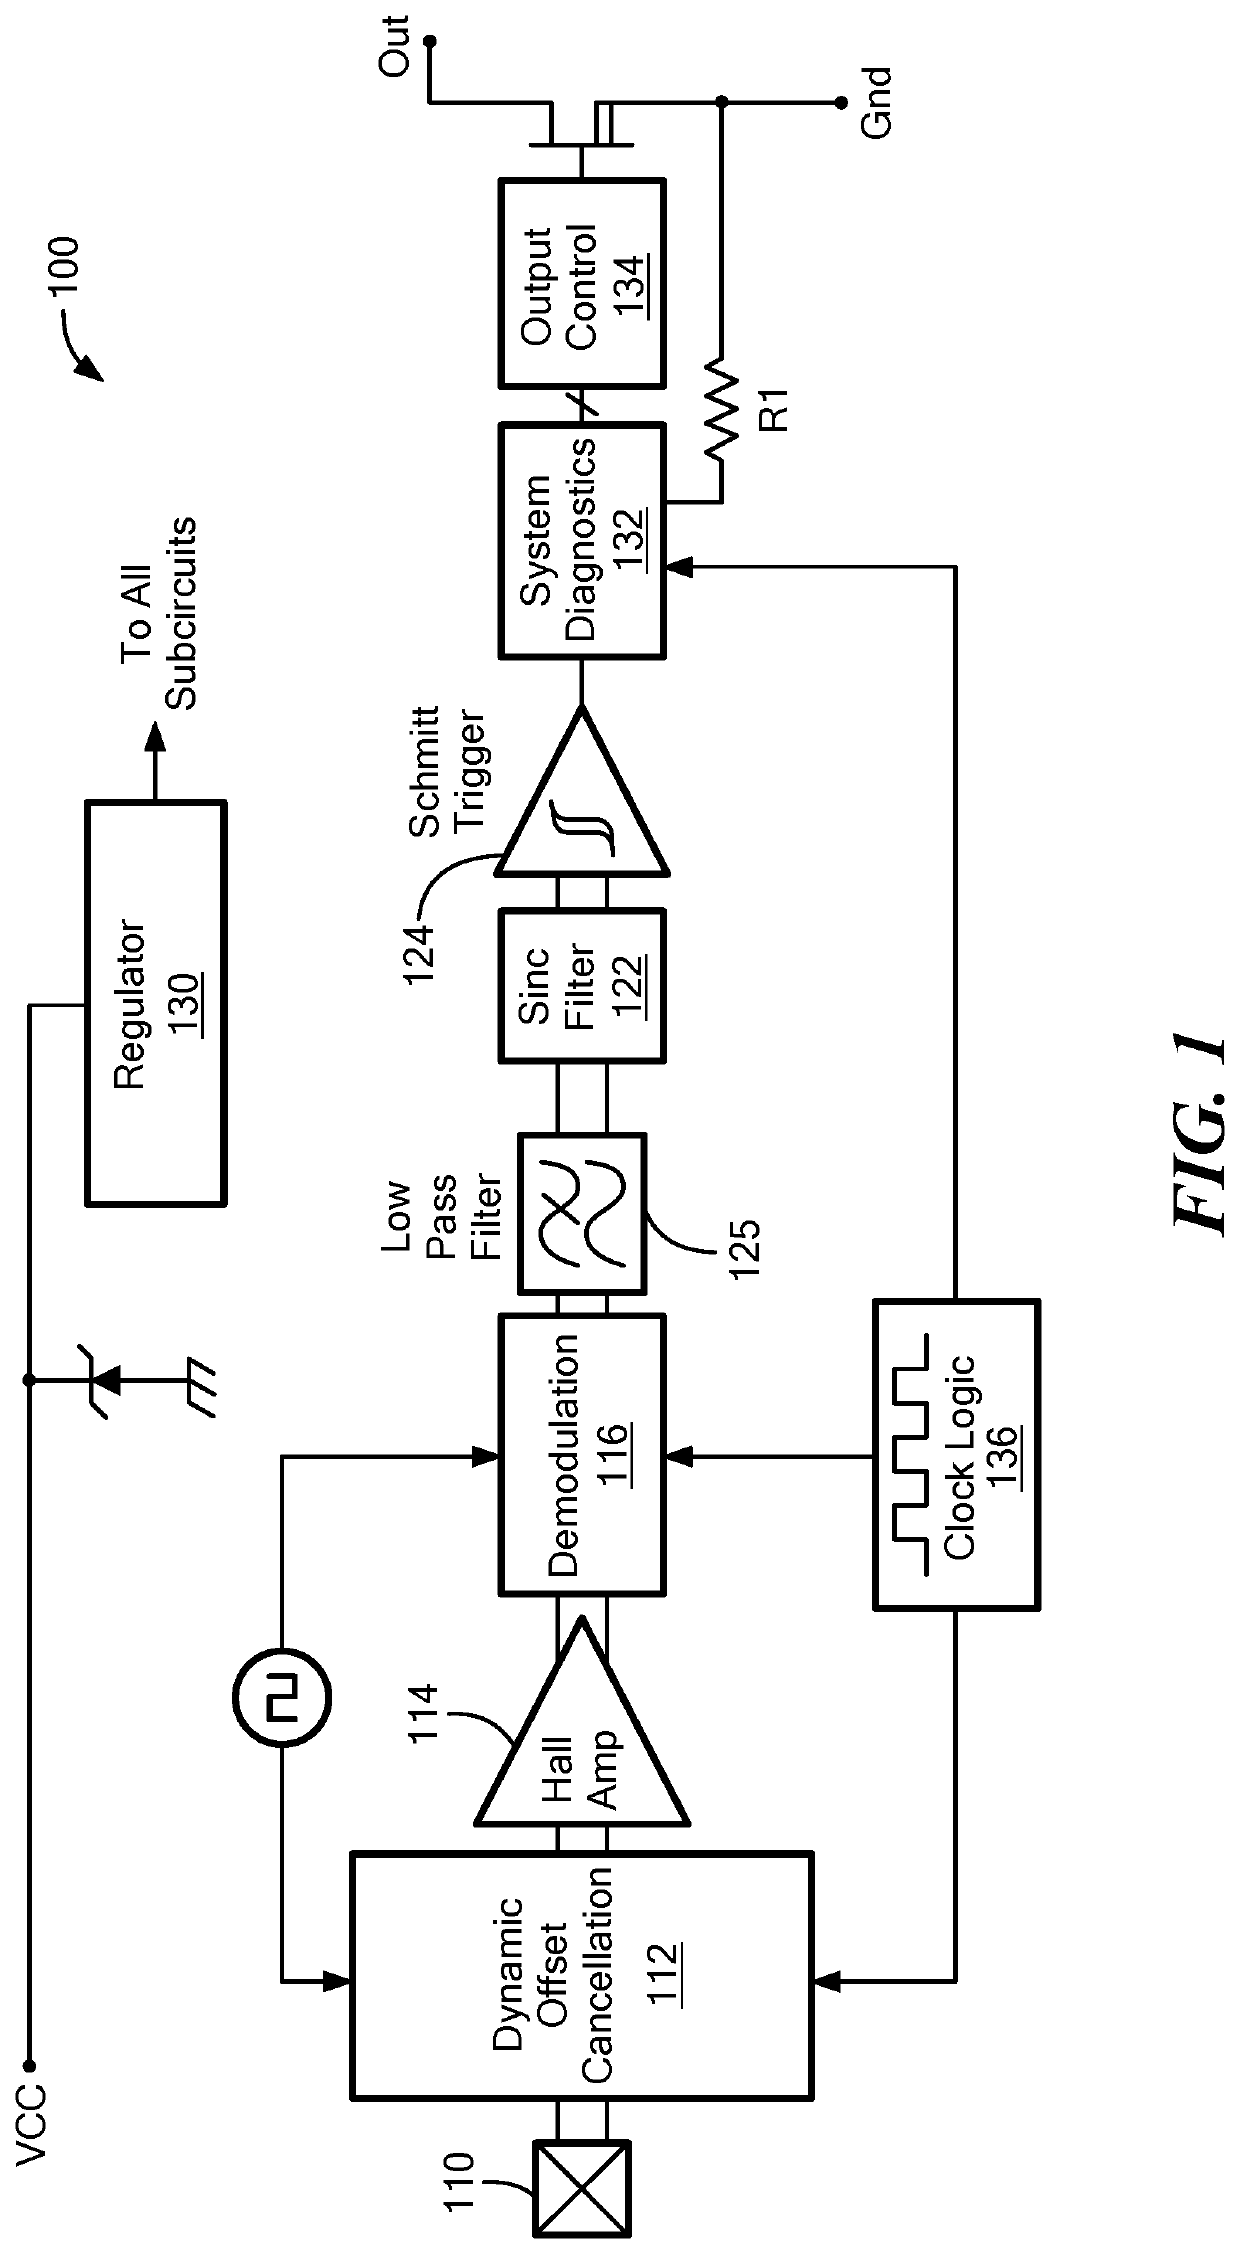 Ratiometric Sensor Output Topology And Methods